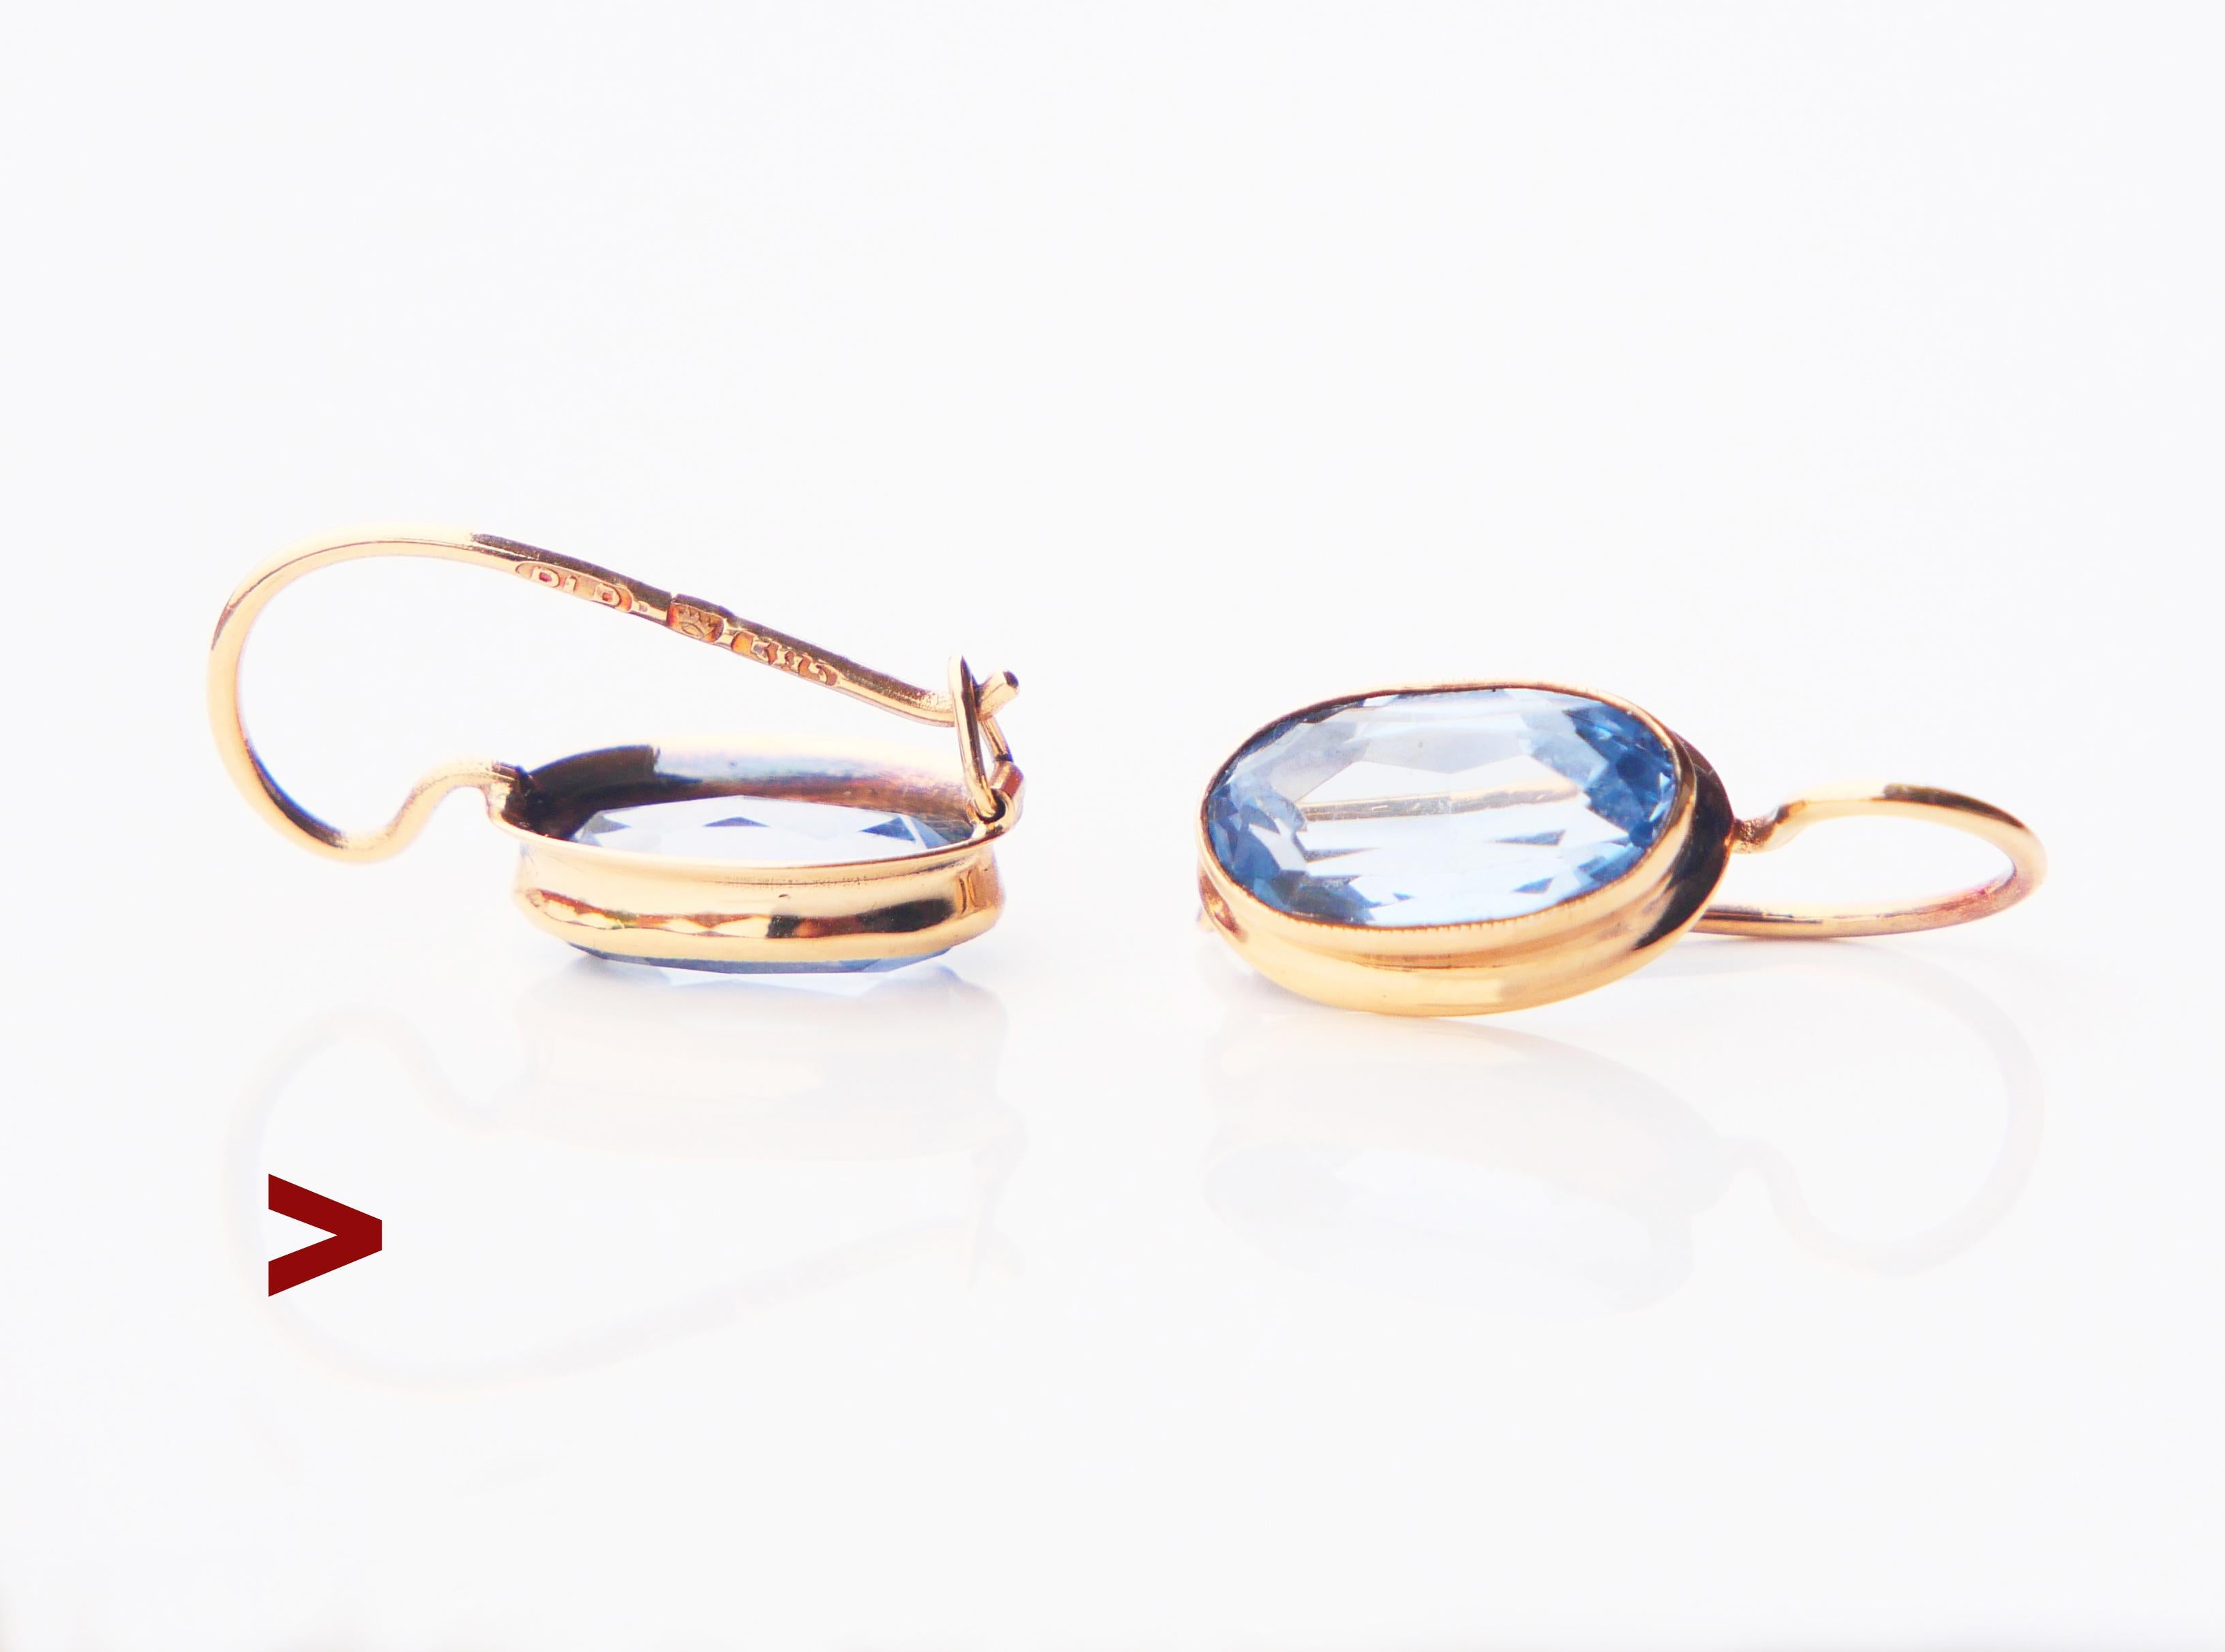 Ein Paar Finish Retro Vintage 14K Ohrringe auf sicheren Haken mit Lünette gefasst oval geschnittenen blauen Spinell Steine.
Die Steine werden im Labor hergestellt und sind Aquamarinen sehr ähnlich.

Hergestellt in Finnland, beide Drähte gestempelt